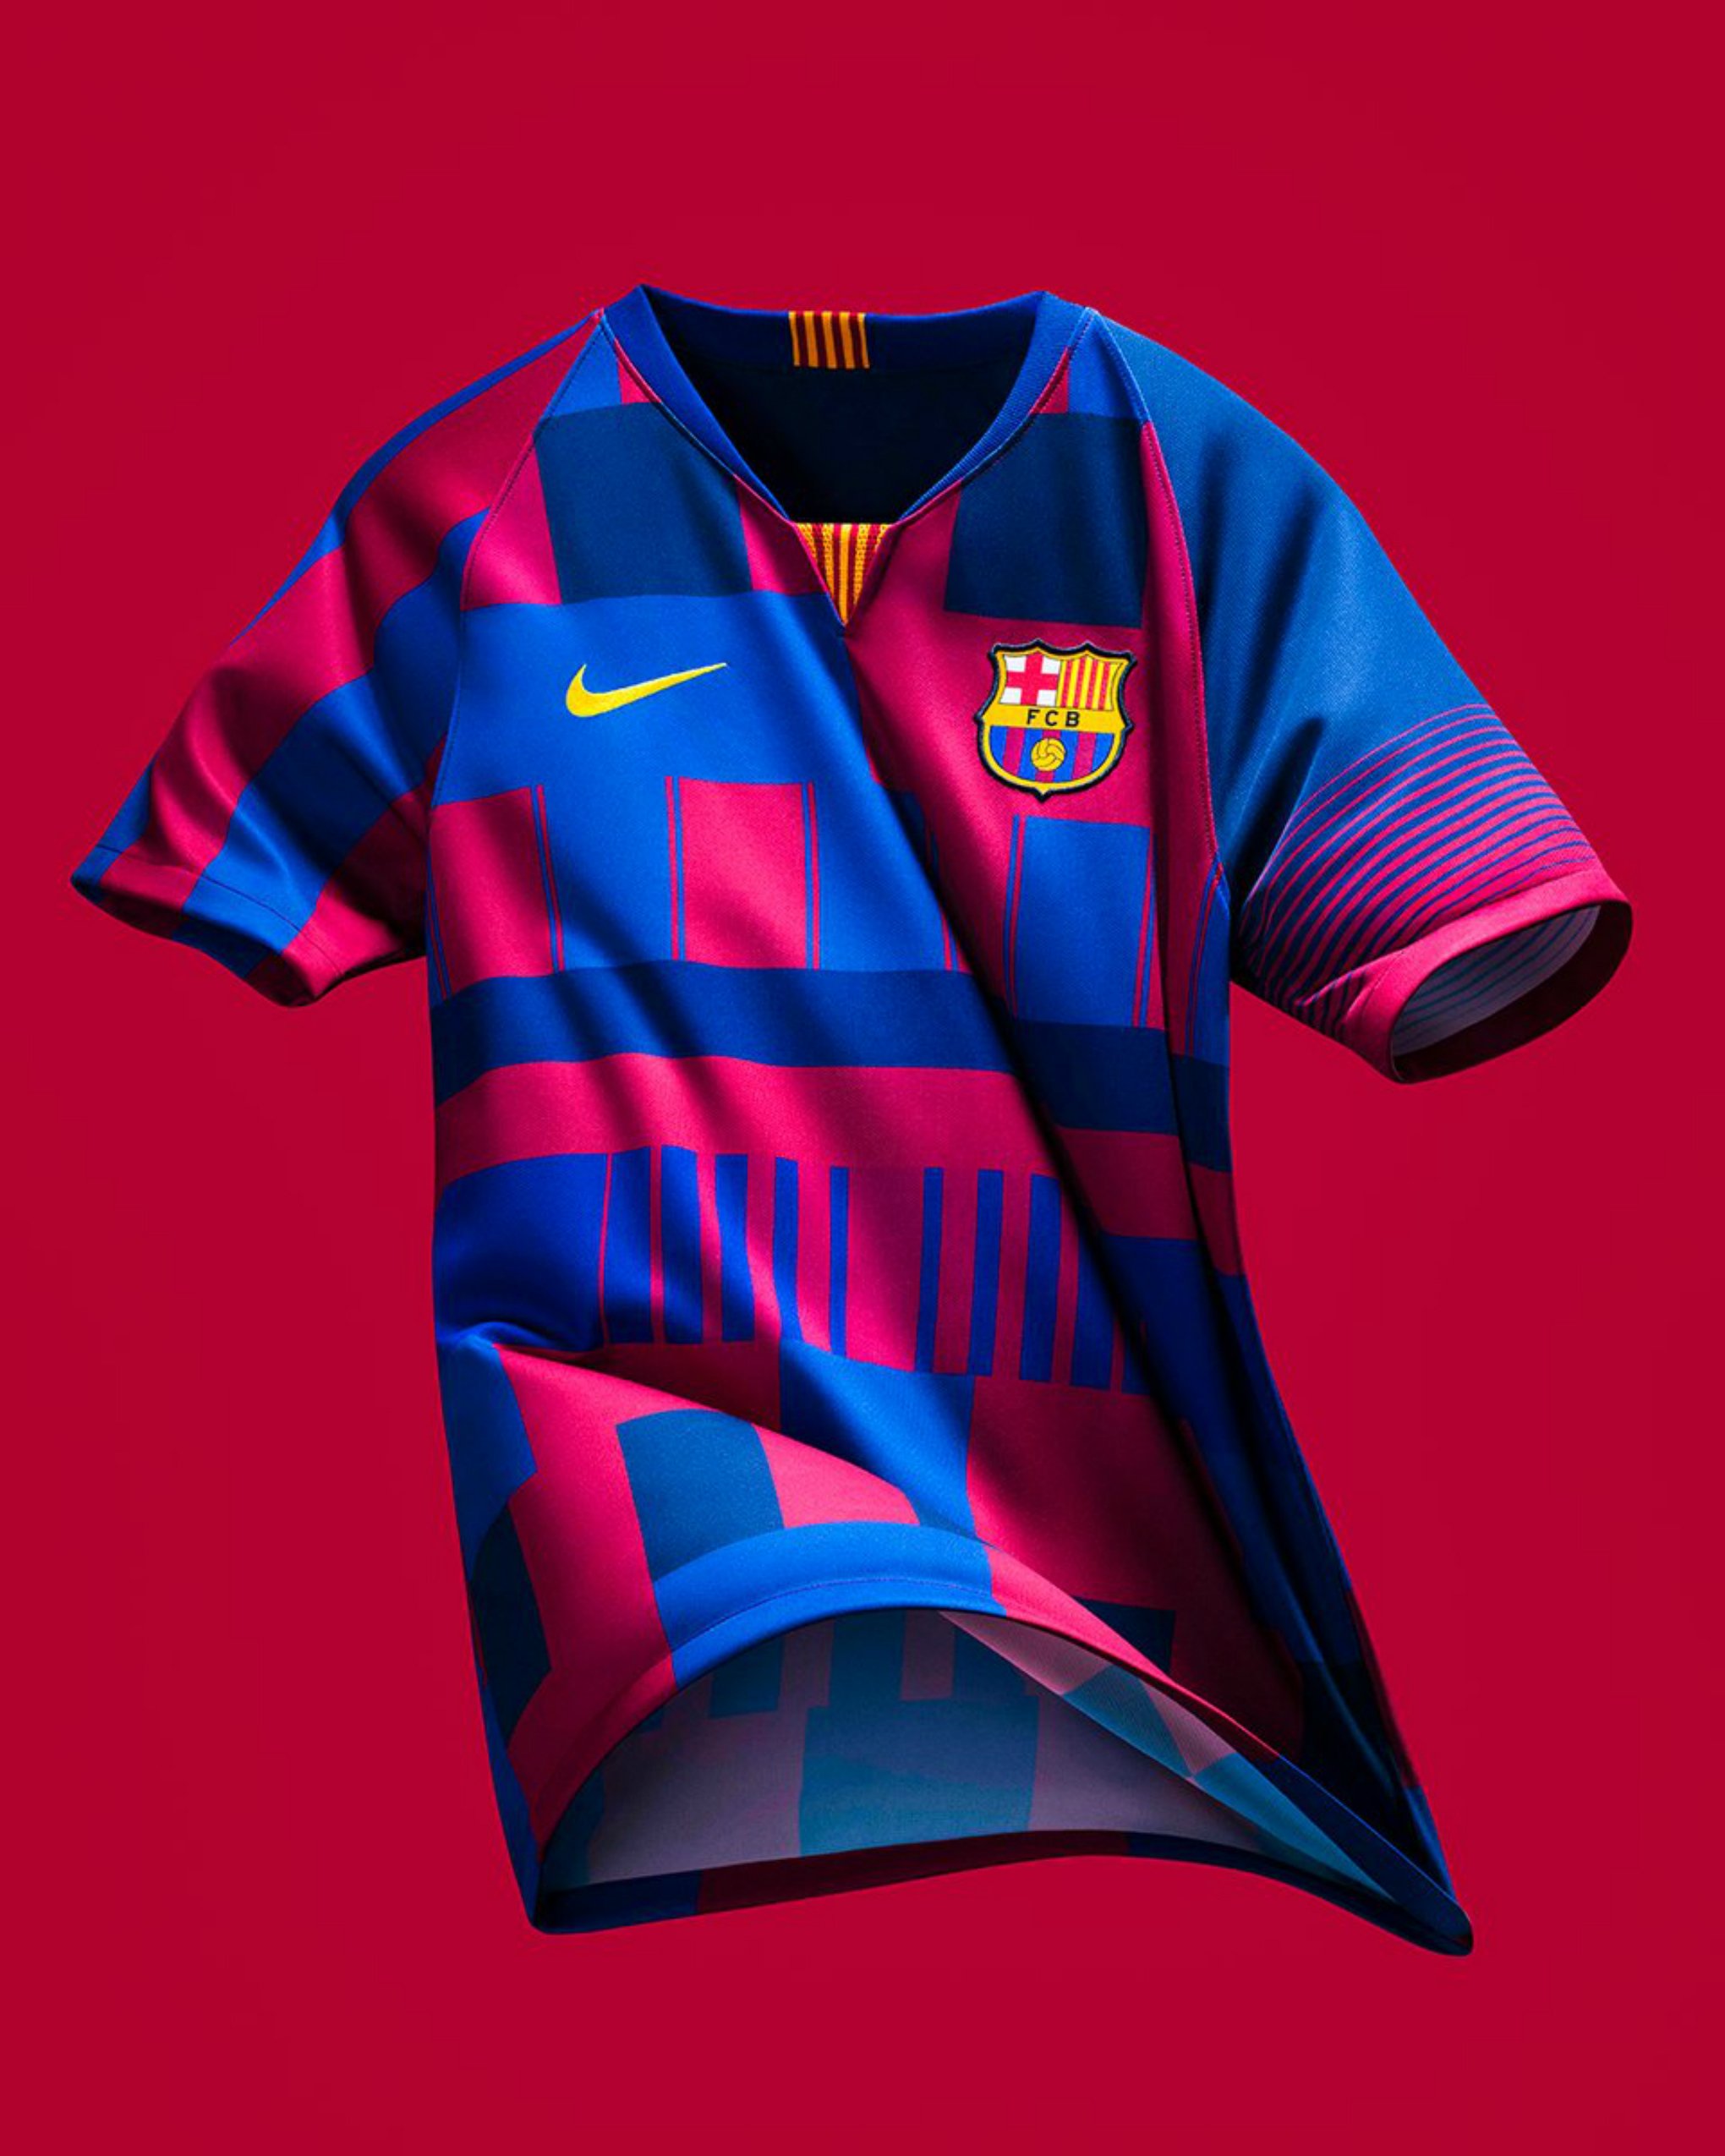 Nike celebra 20 anys de relació amb el Barça amb una samarreta polèmica